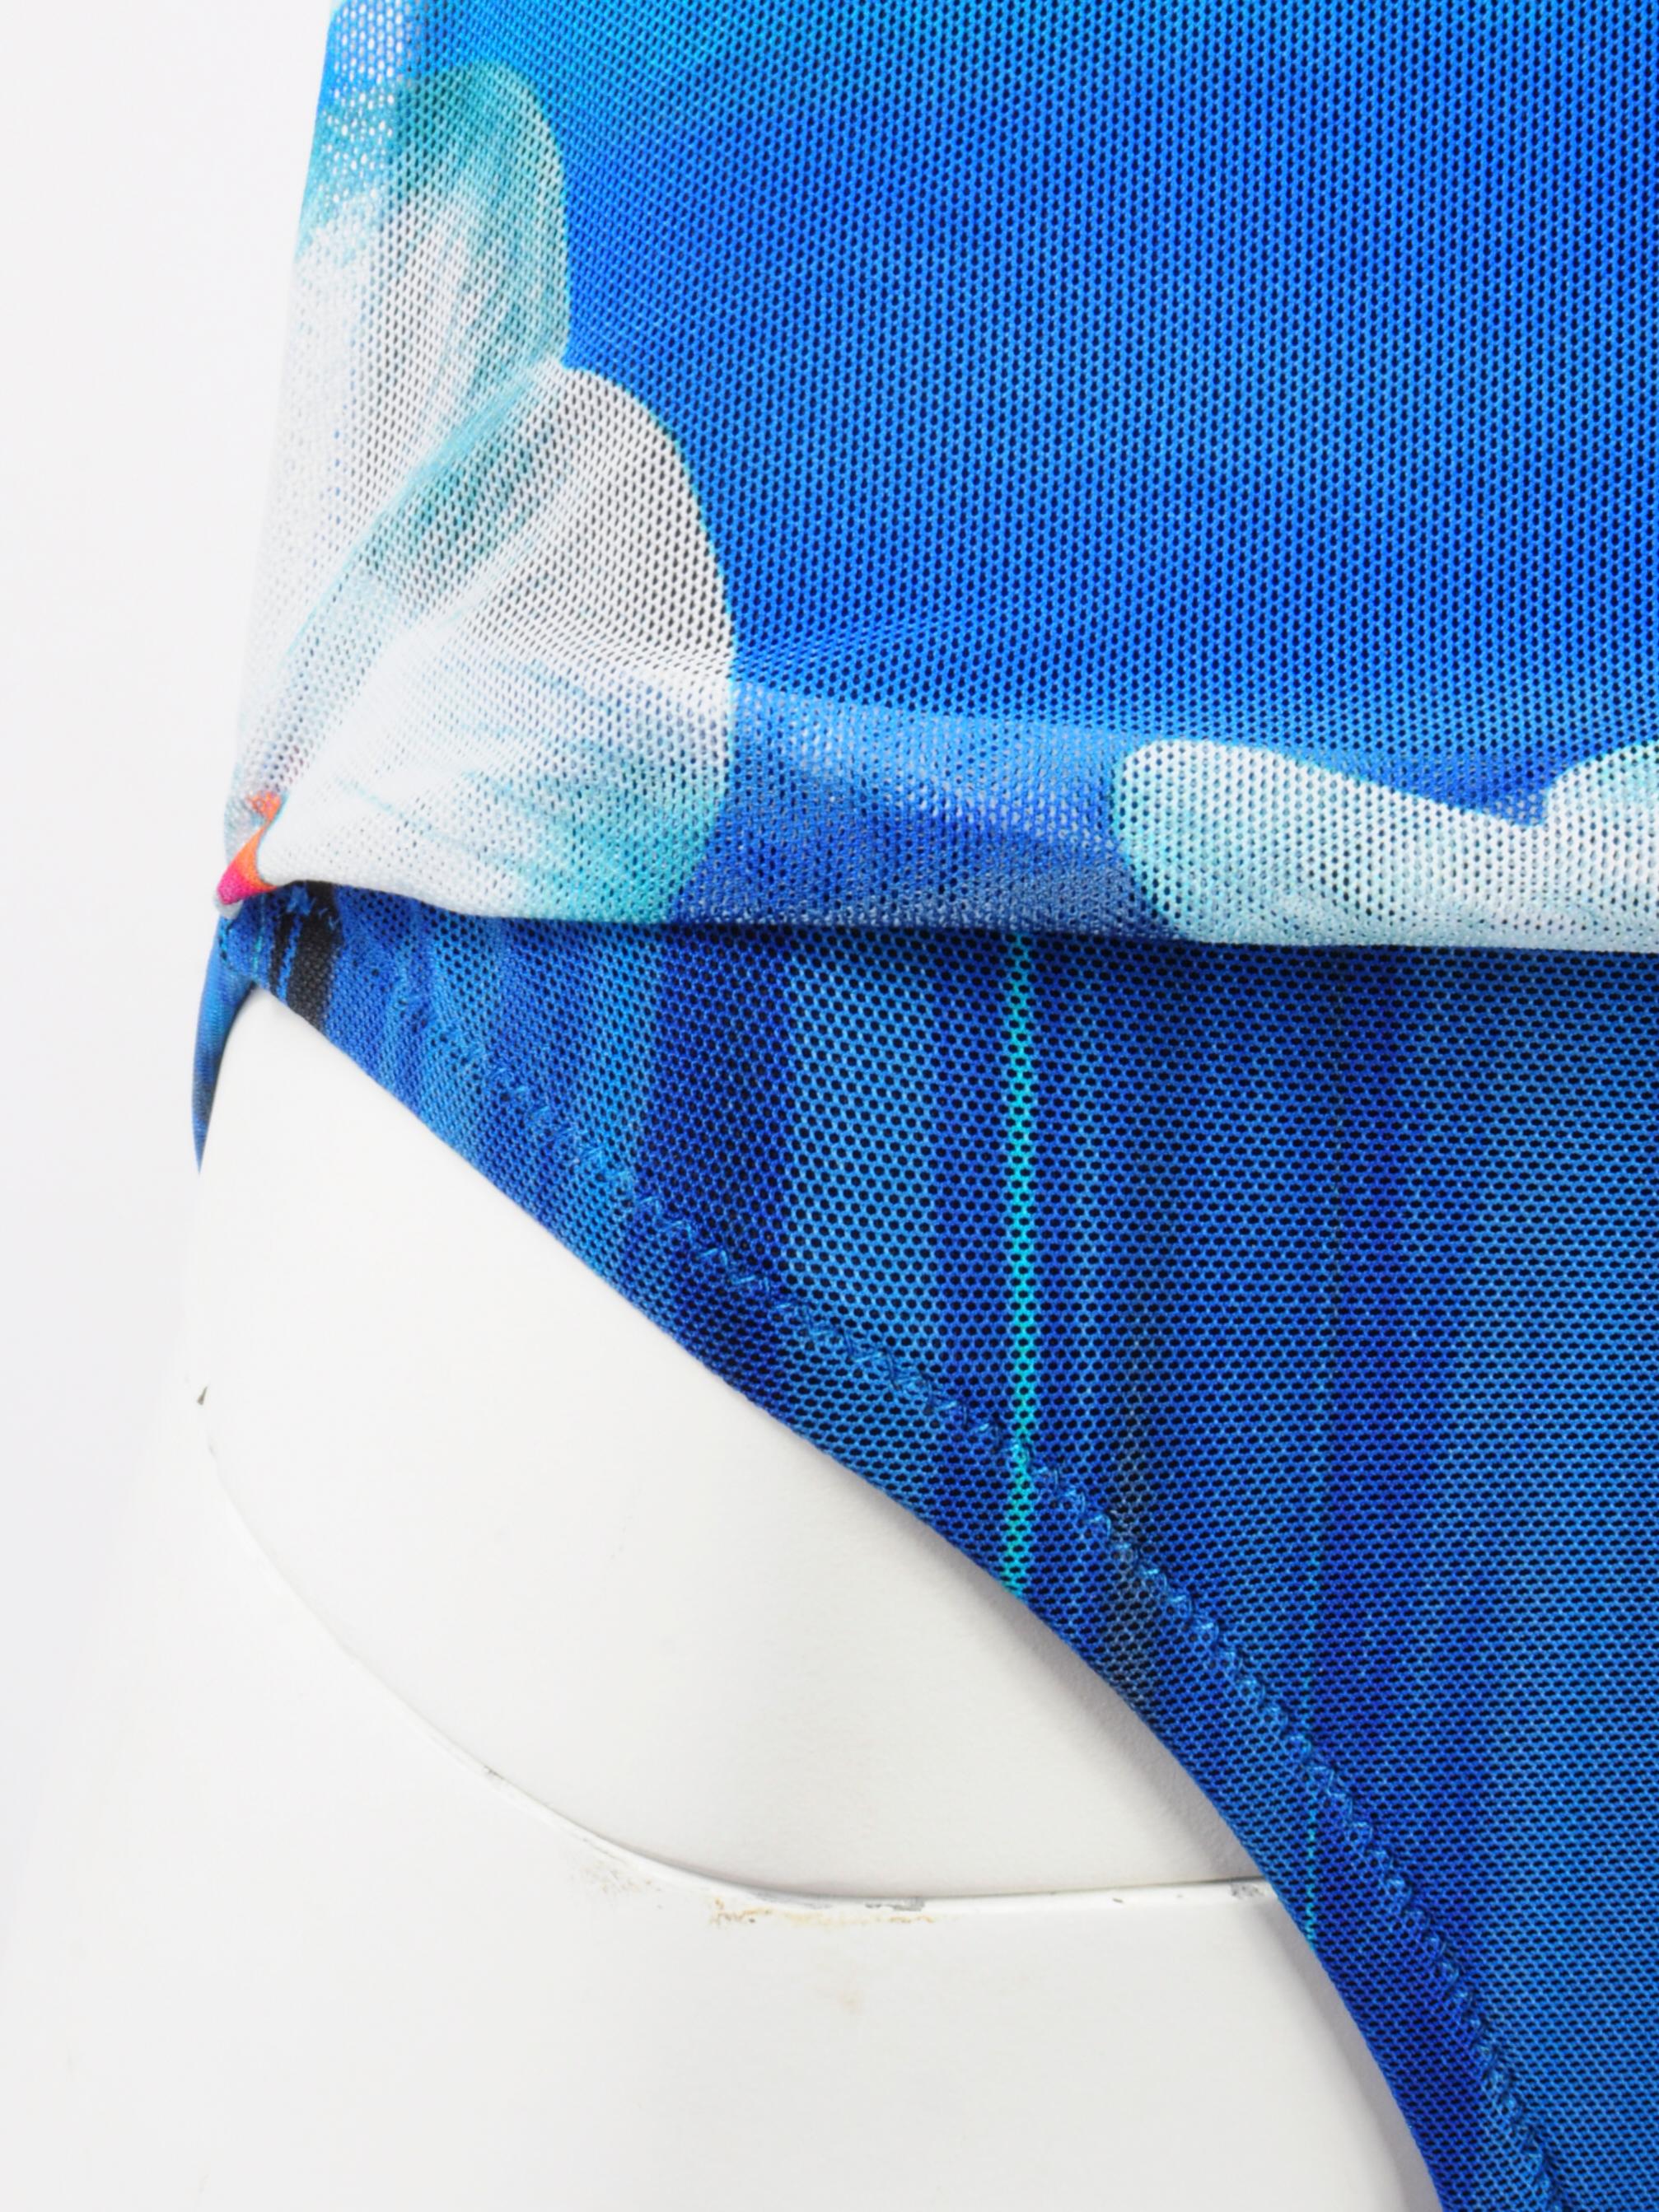 La Perla Mesh Swimsuit Bodysuit Draped Futuristic Orchid Flower Blue Print 2000s For Sale 1